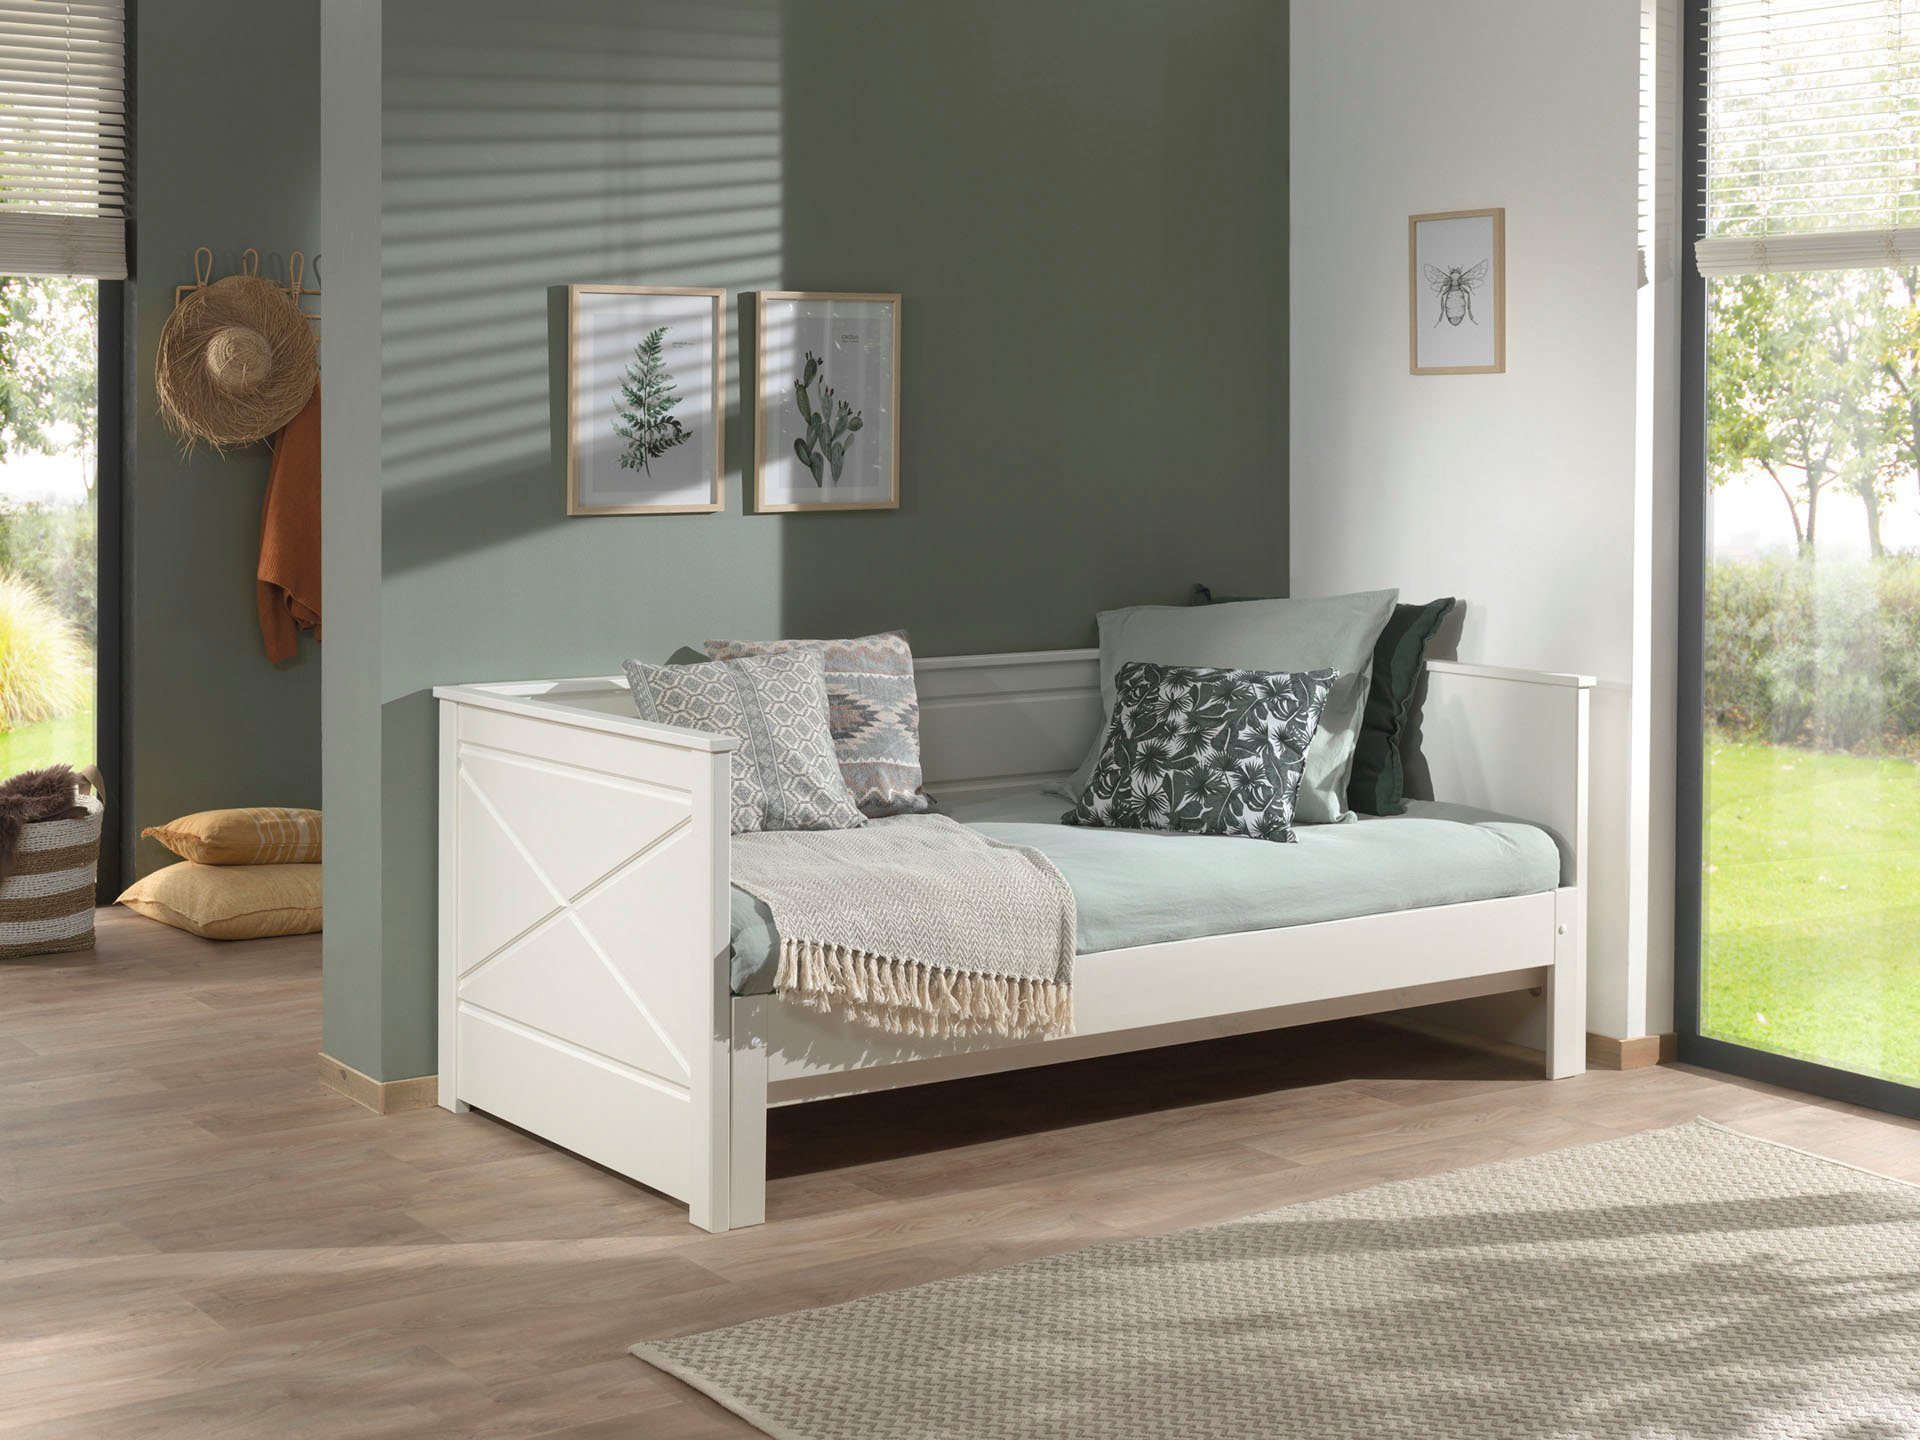 cm, Pino, cm, Vipack LF Vipack Bett Kojenbett ausziehen lackiert 90x200 Weiß auf 180x200 Ausf.